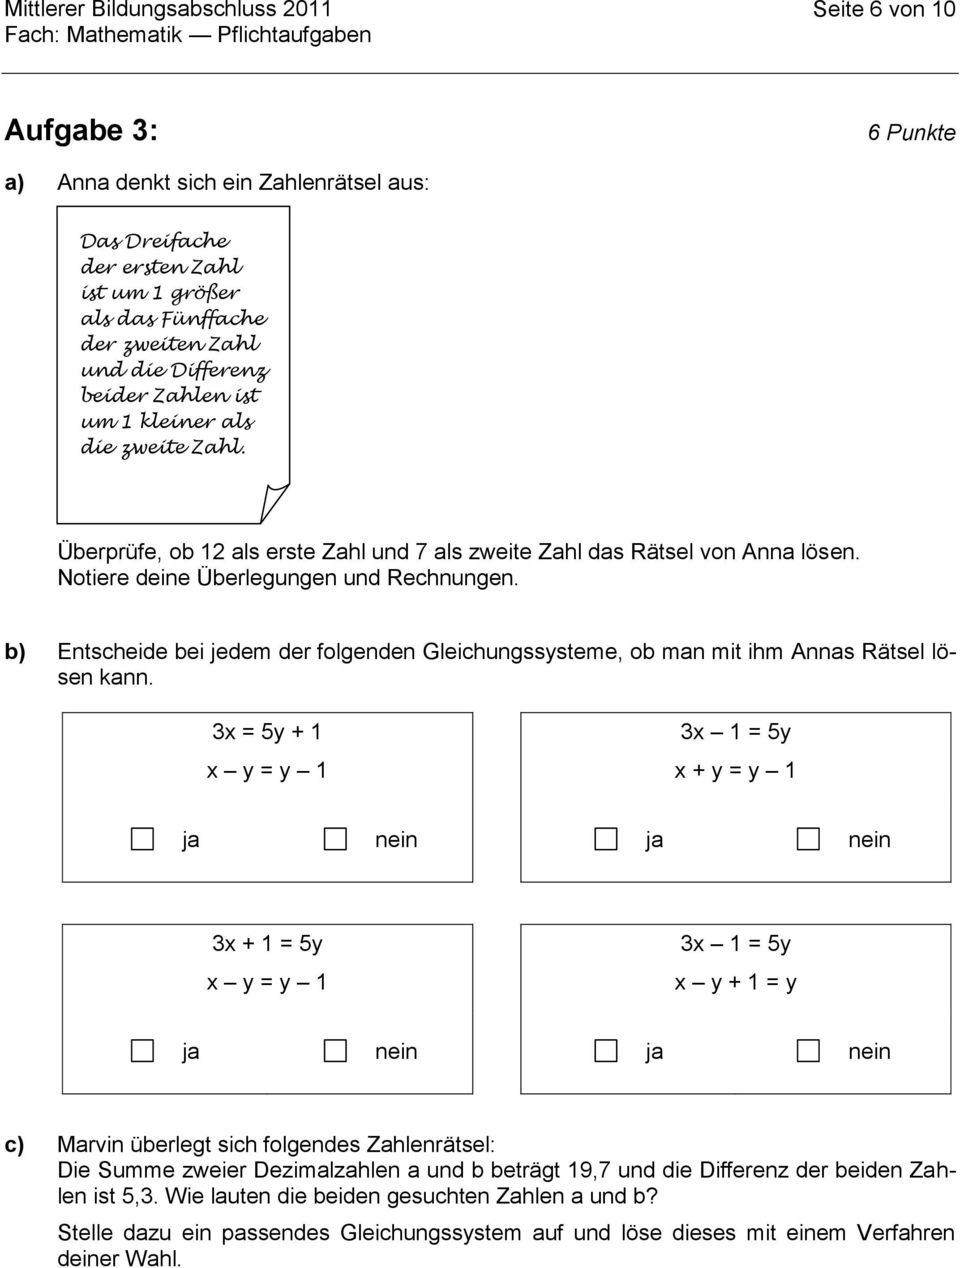 b) Entscheide bei jedem der folgenden Gleichungssysteme, ob man mit ihm Annas Rätsel lösen kann.